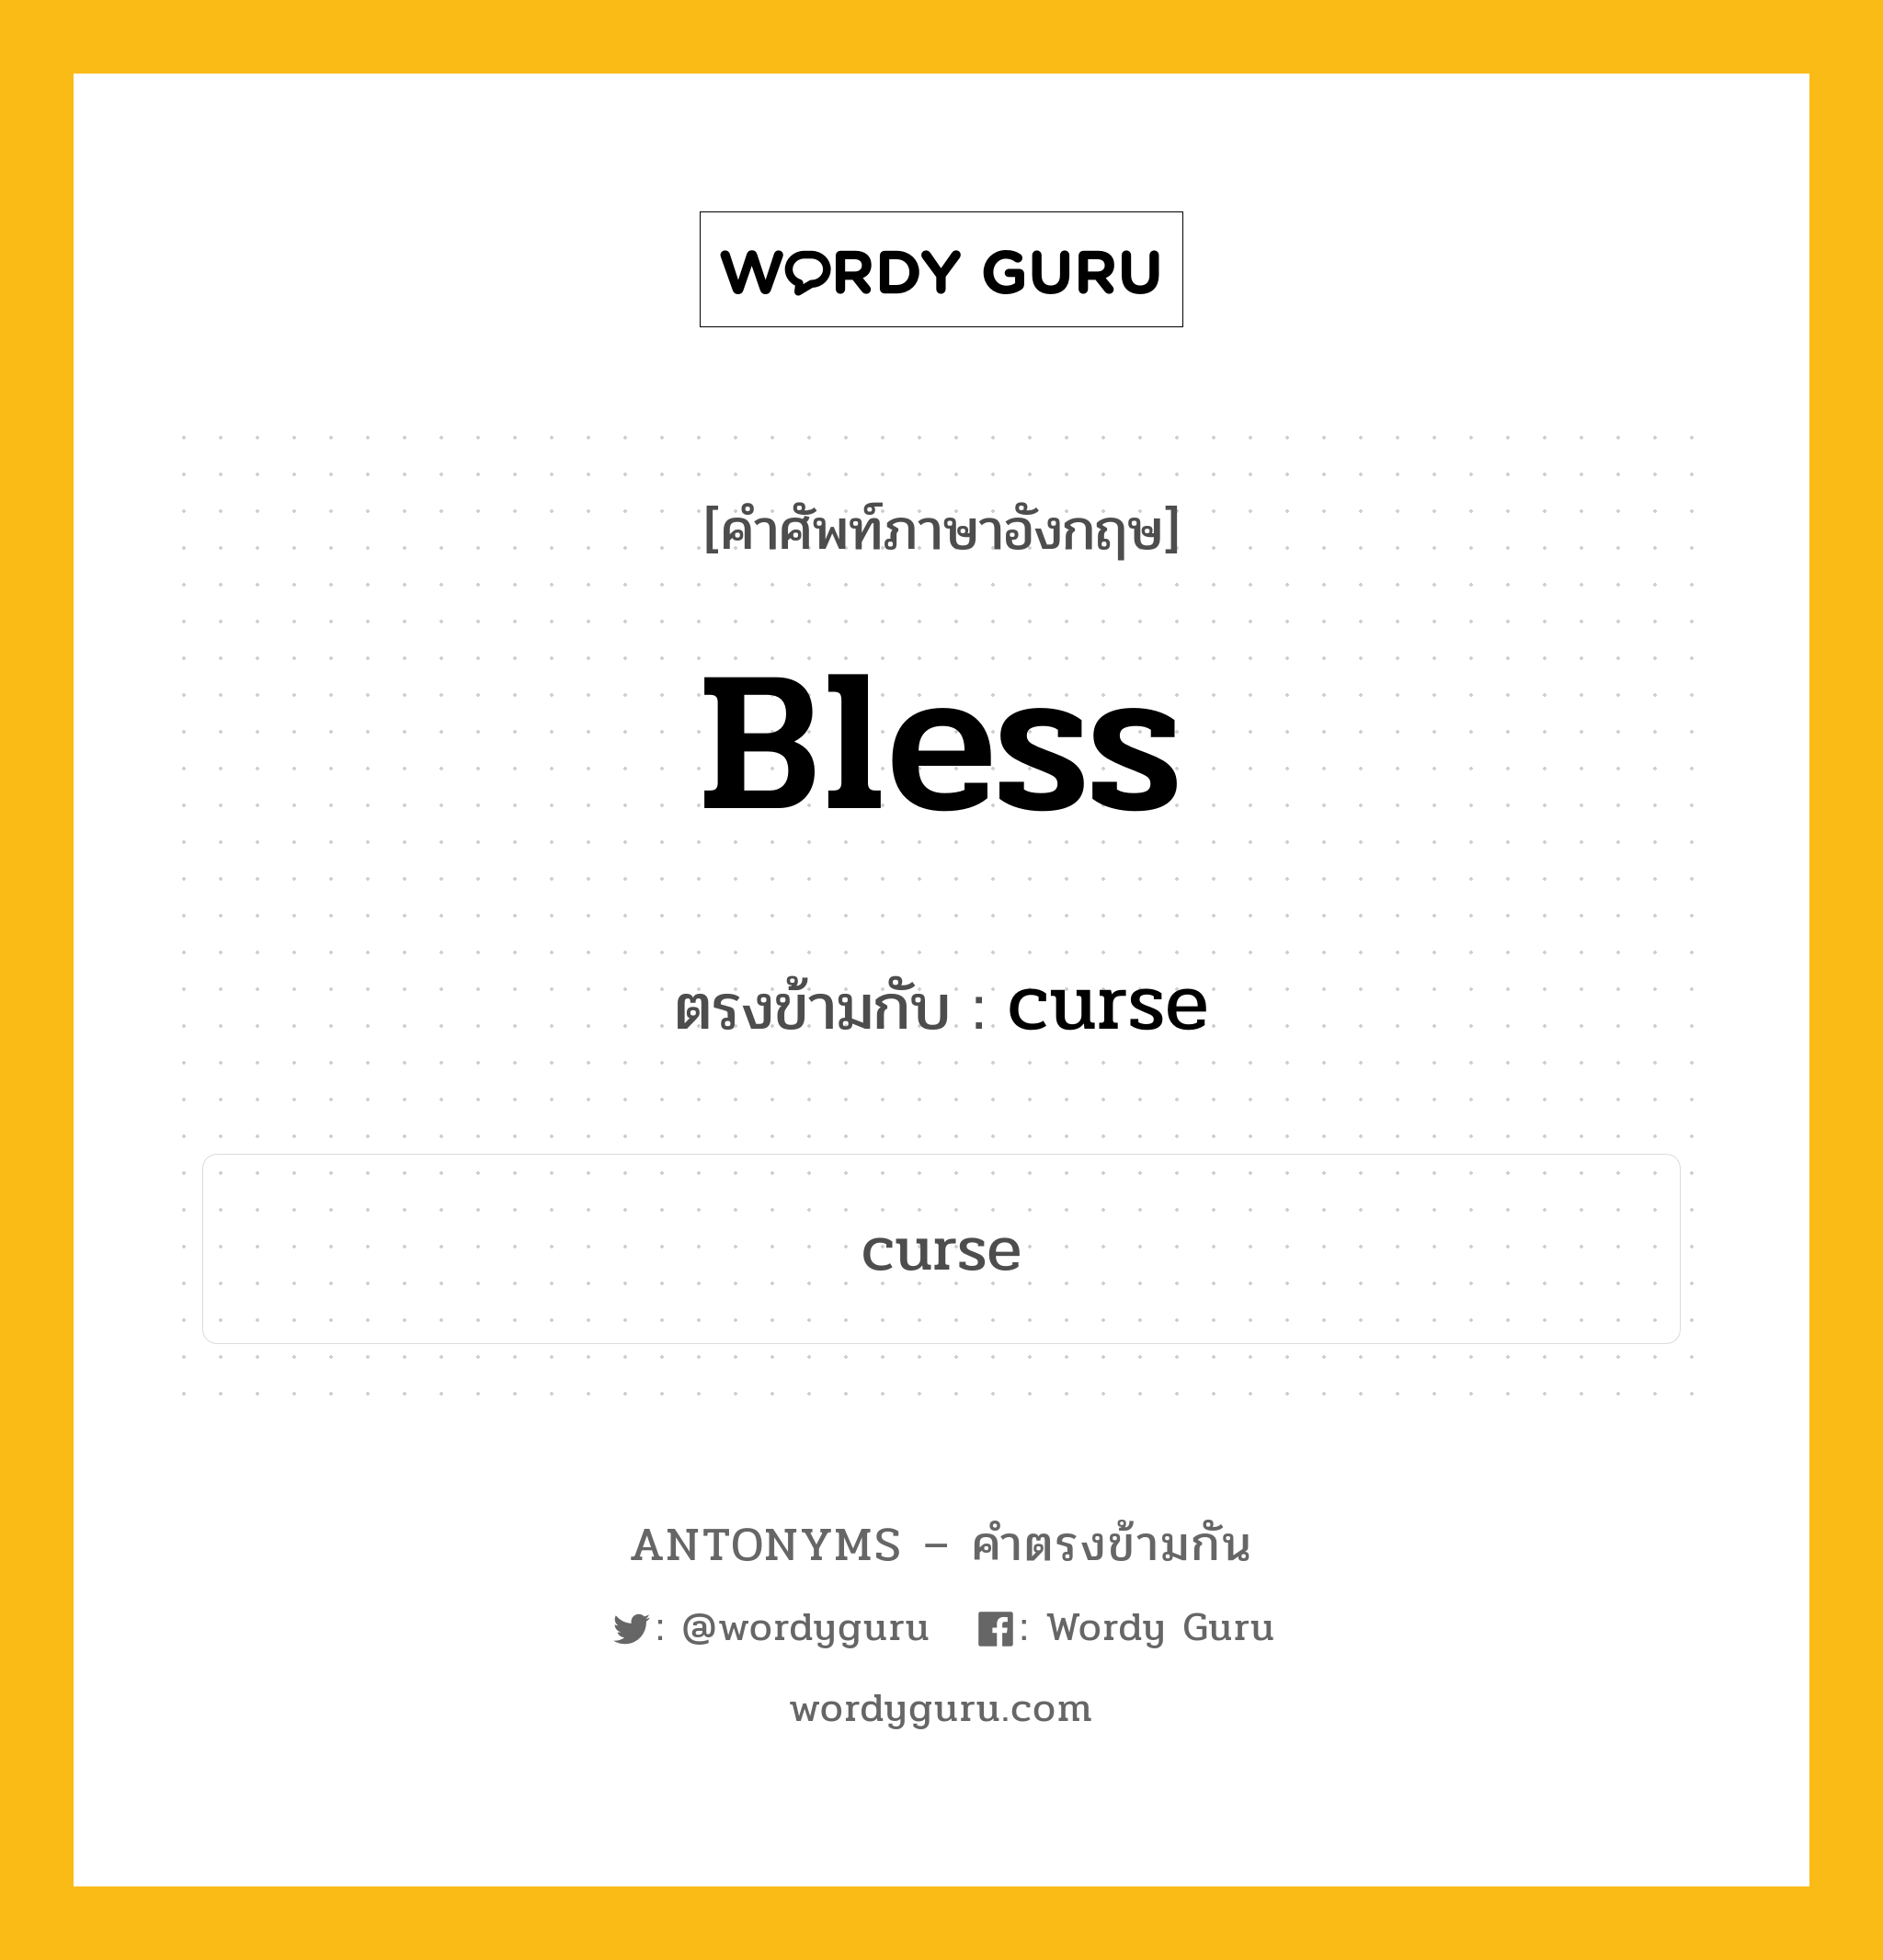 bless เป็นคำตรงข้ามกับคำไหนบ้าง?, คำศัพท์ภาษาอังกฤษ bless ตรงข้ามกับ curse หมวด curse